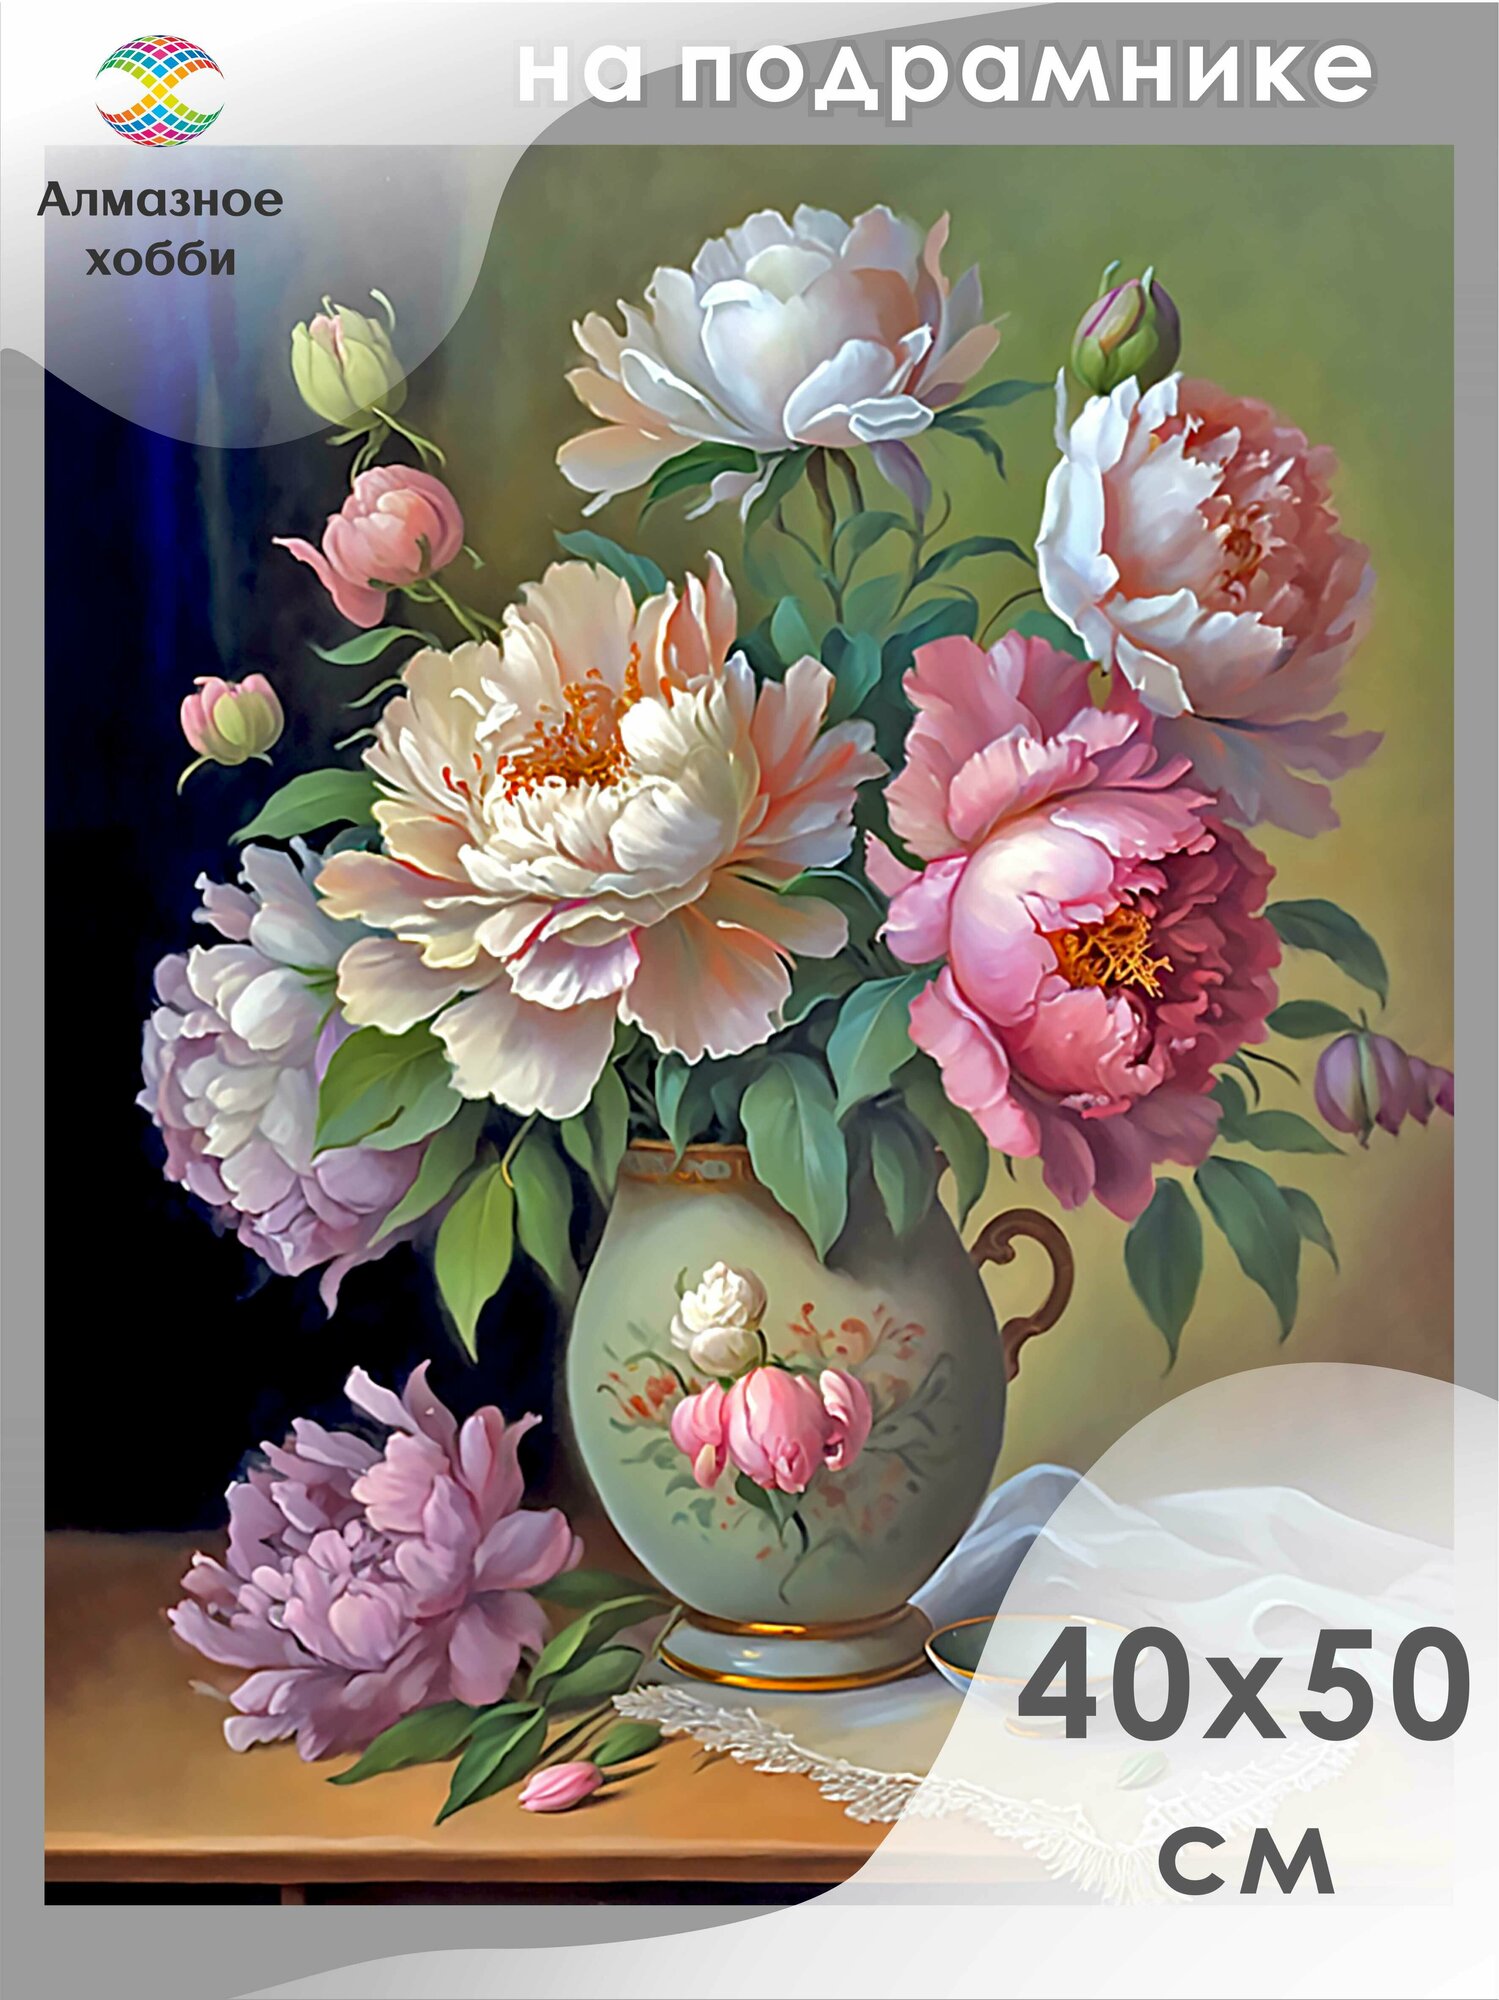 Алмазная мозаика на подрамнике Картина стразами Алмазное хобби "Букет цветов" 40х50